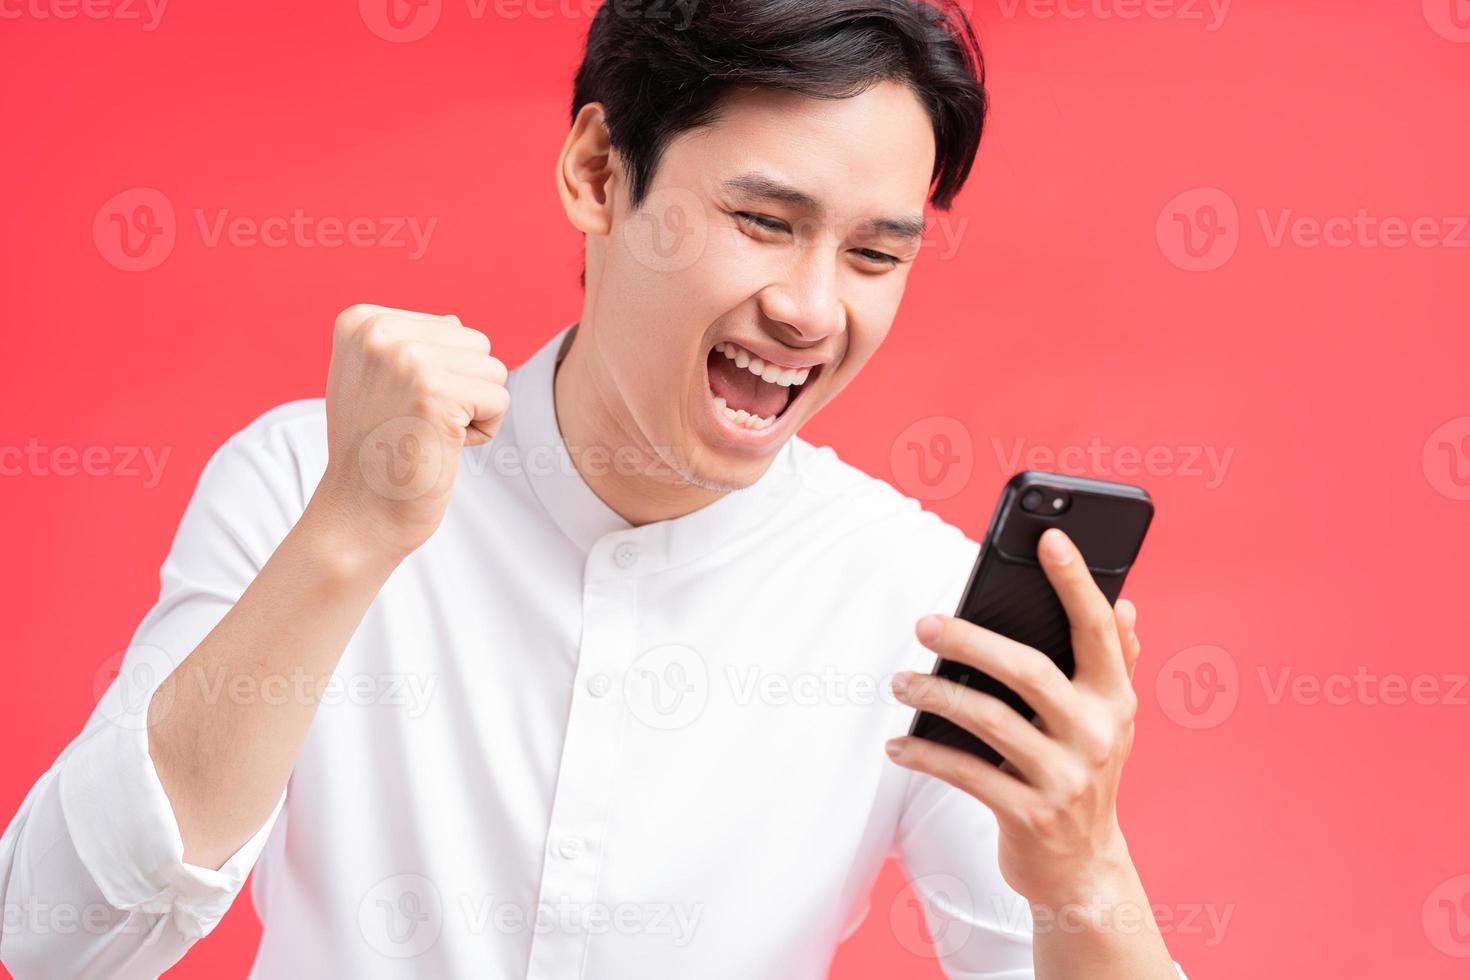 una foto del hombre celebrando su victoria cuando recibió un mensaje de texto en su teléfono celular